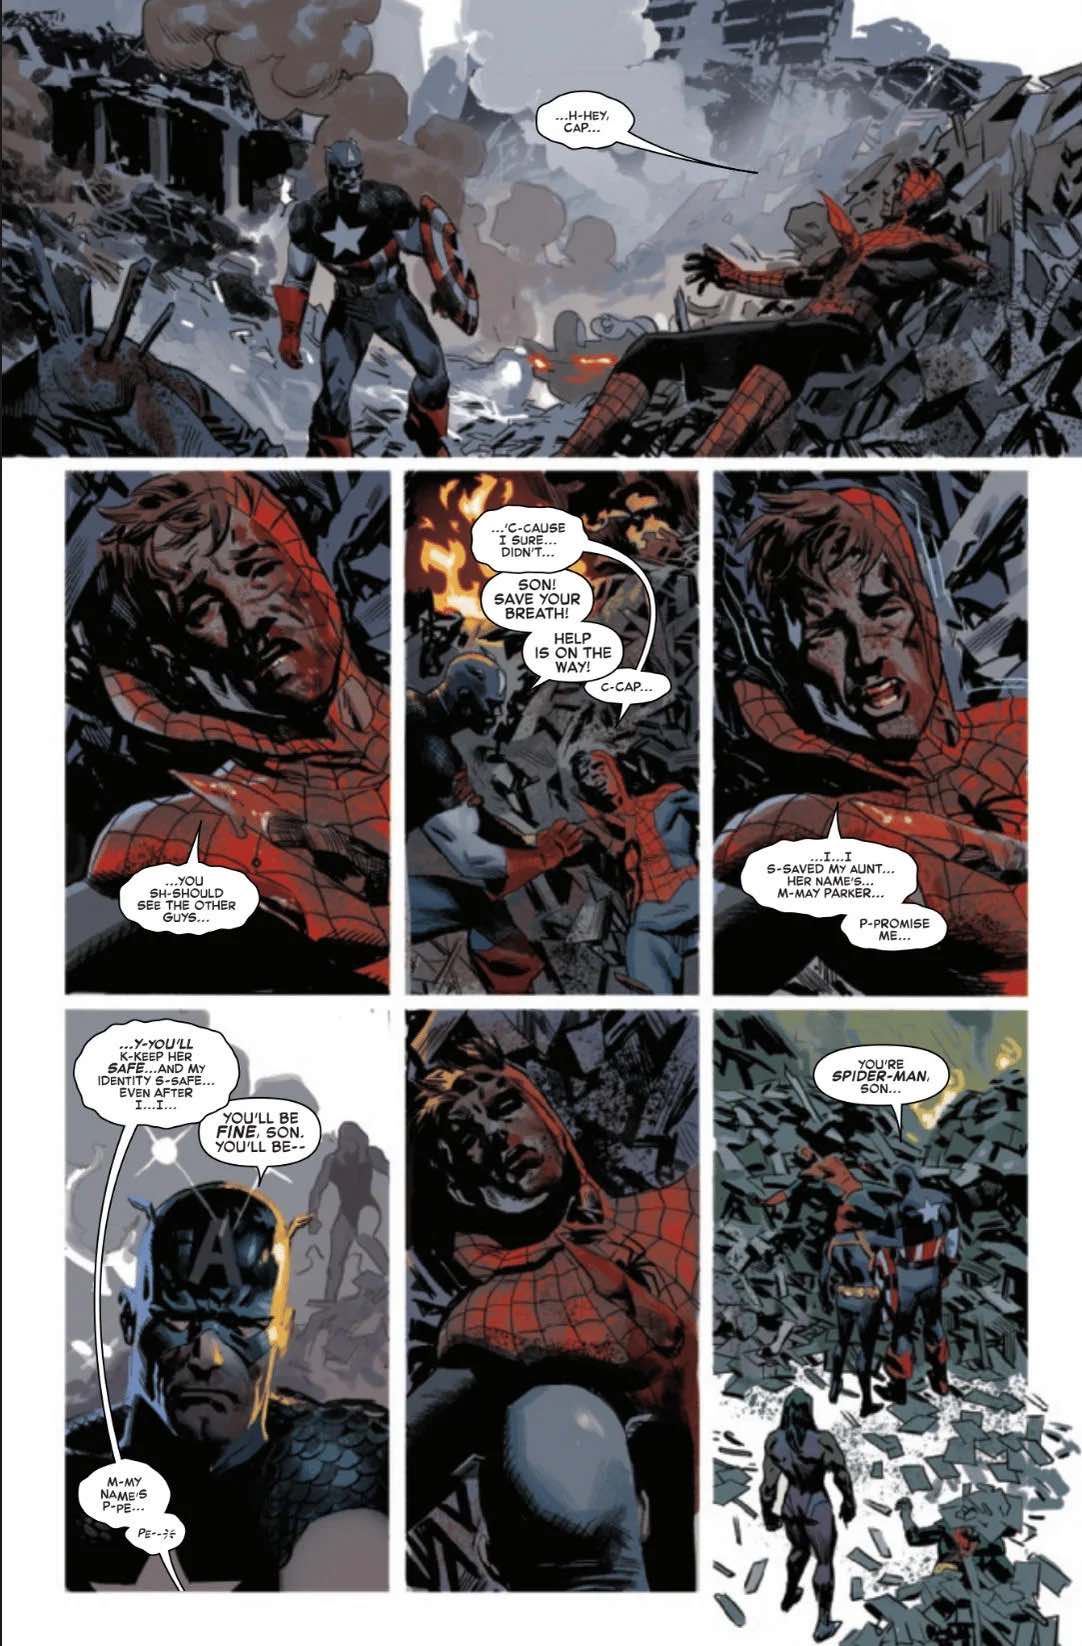 Marvel показала душераздирающую сцену смерти Человека-паука в «Мстителях: Сумерки»